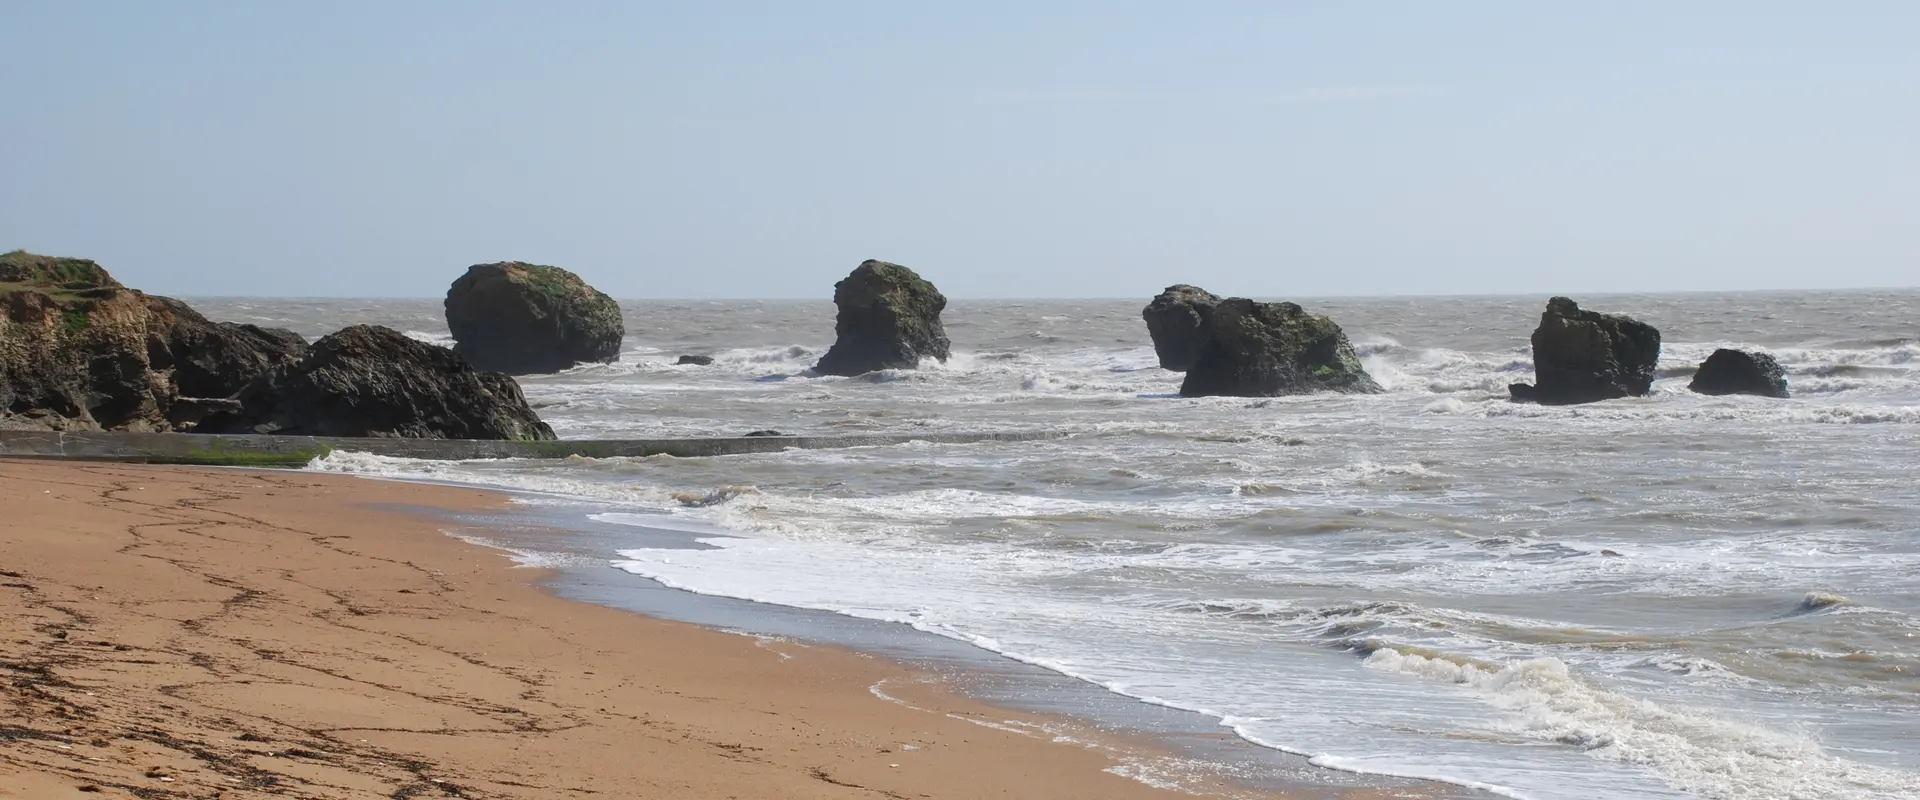 Les rochers des cinq Pineaux sur la Corniche vendéenne, Vendée